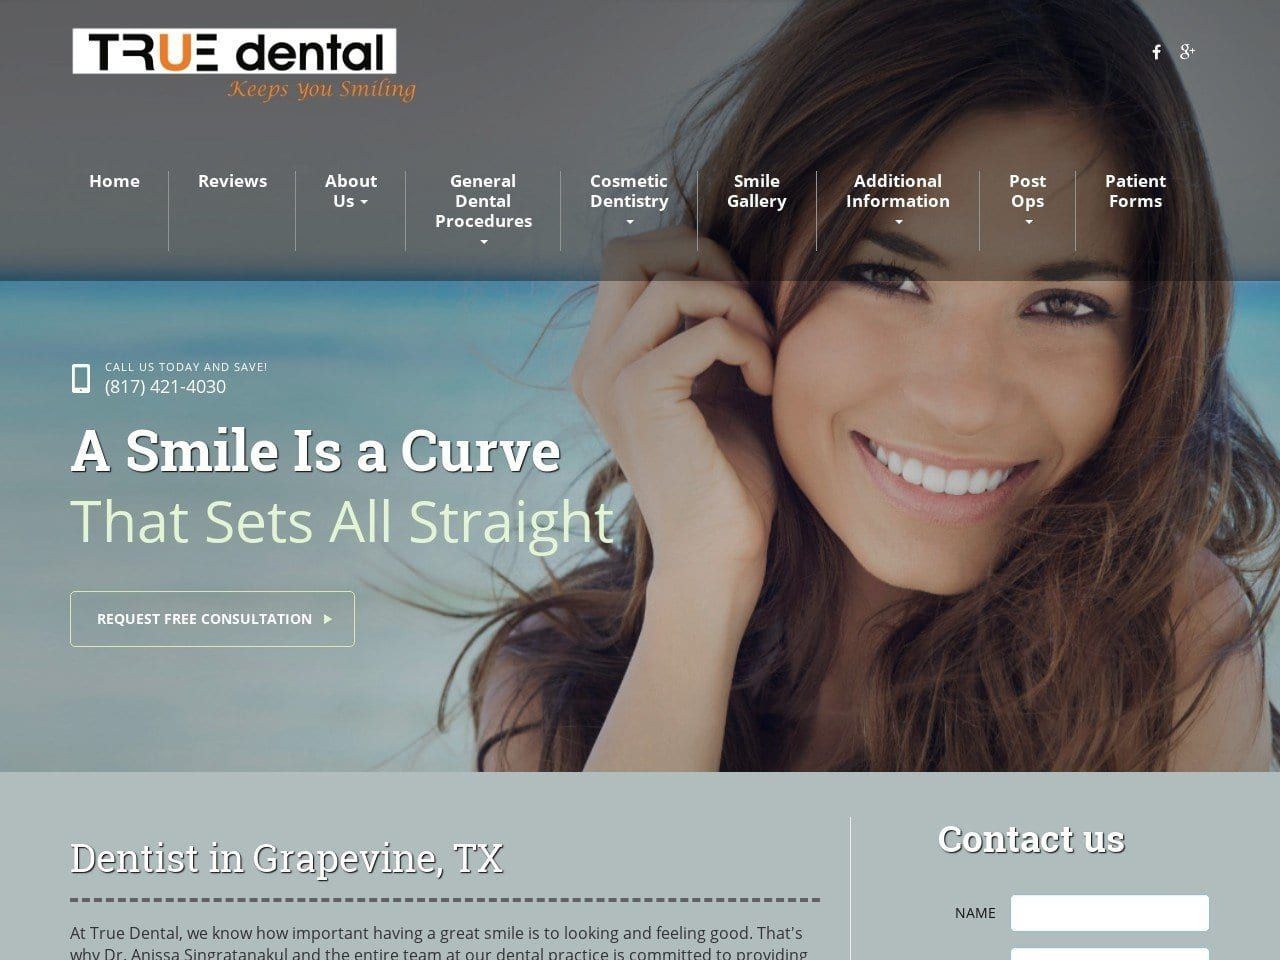 True Dental Website Screenshot from mytruedental.com